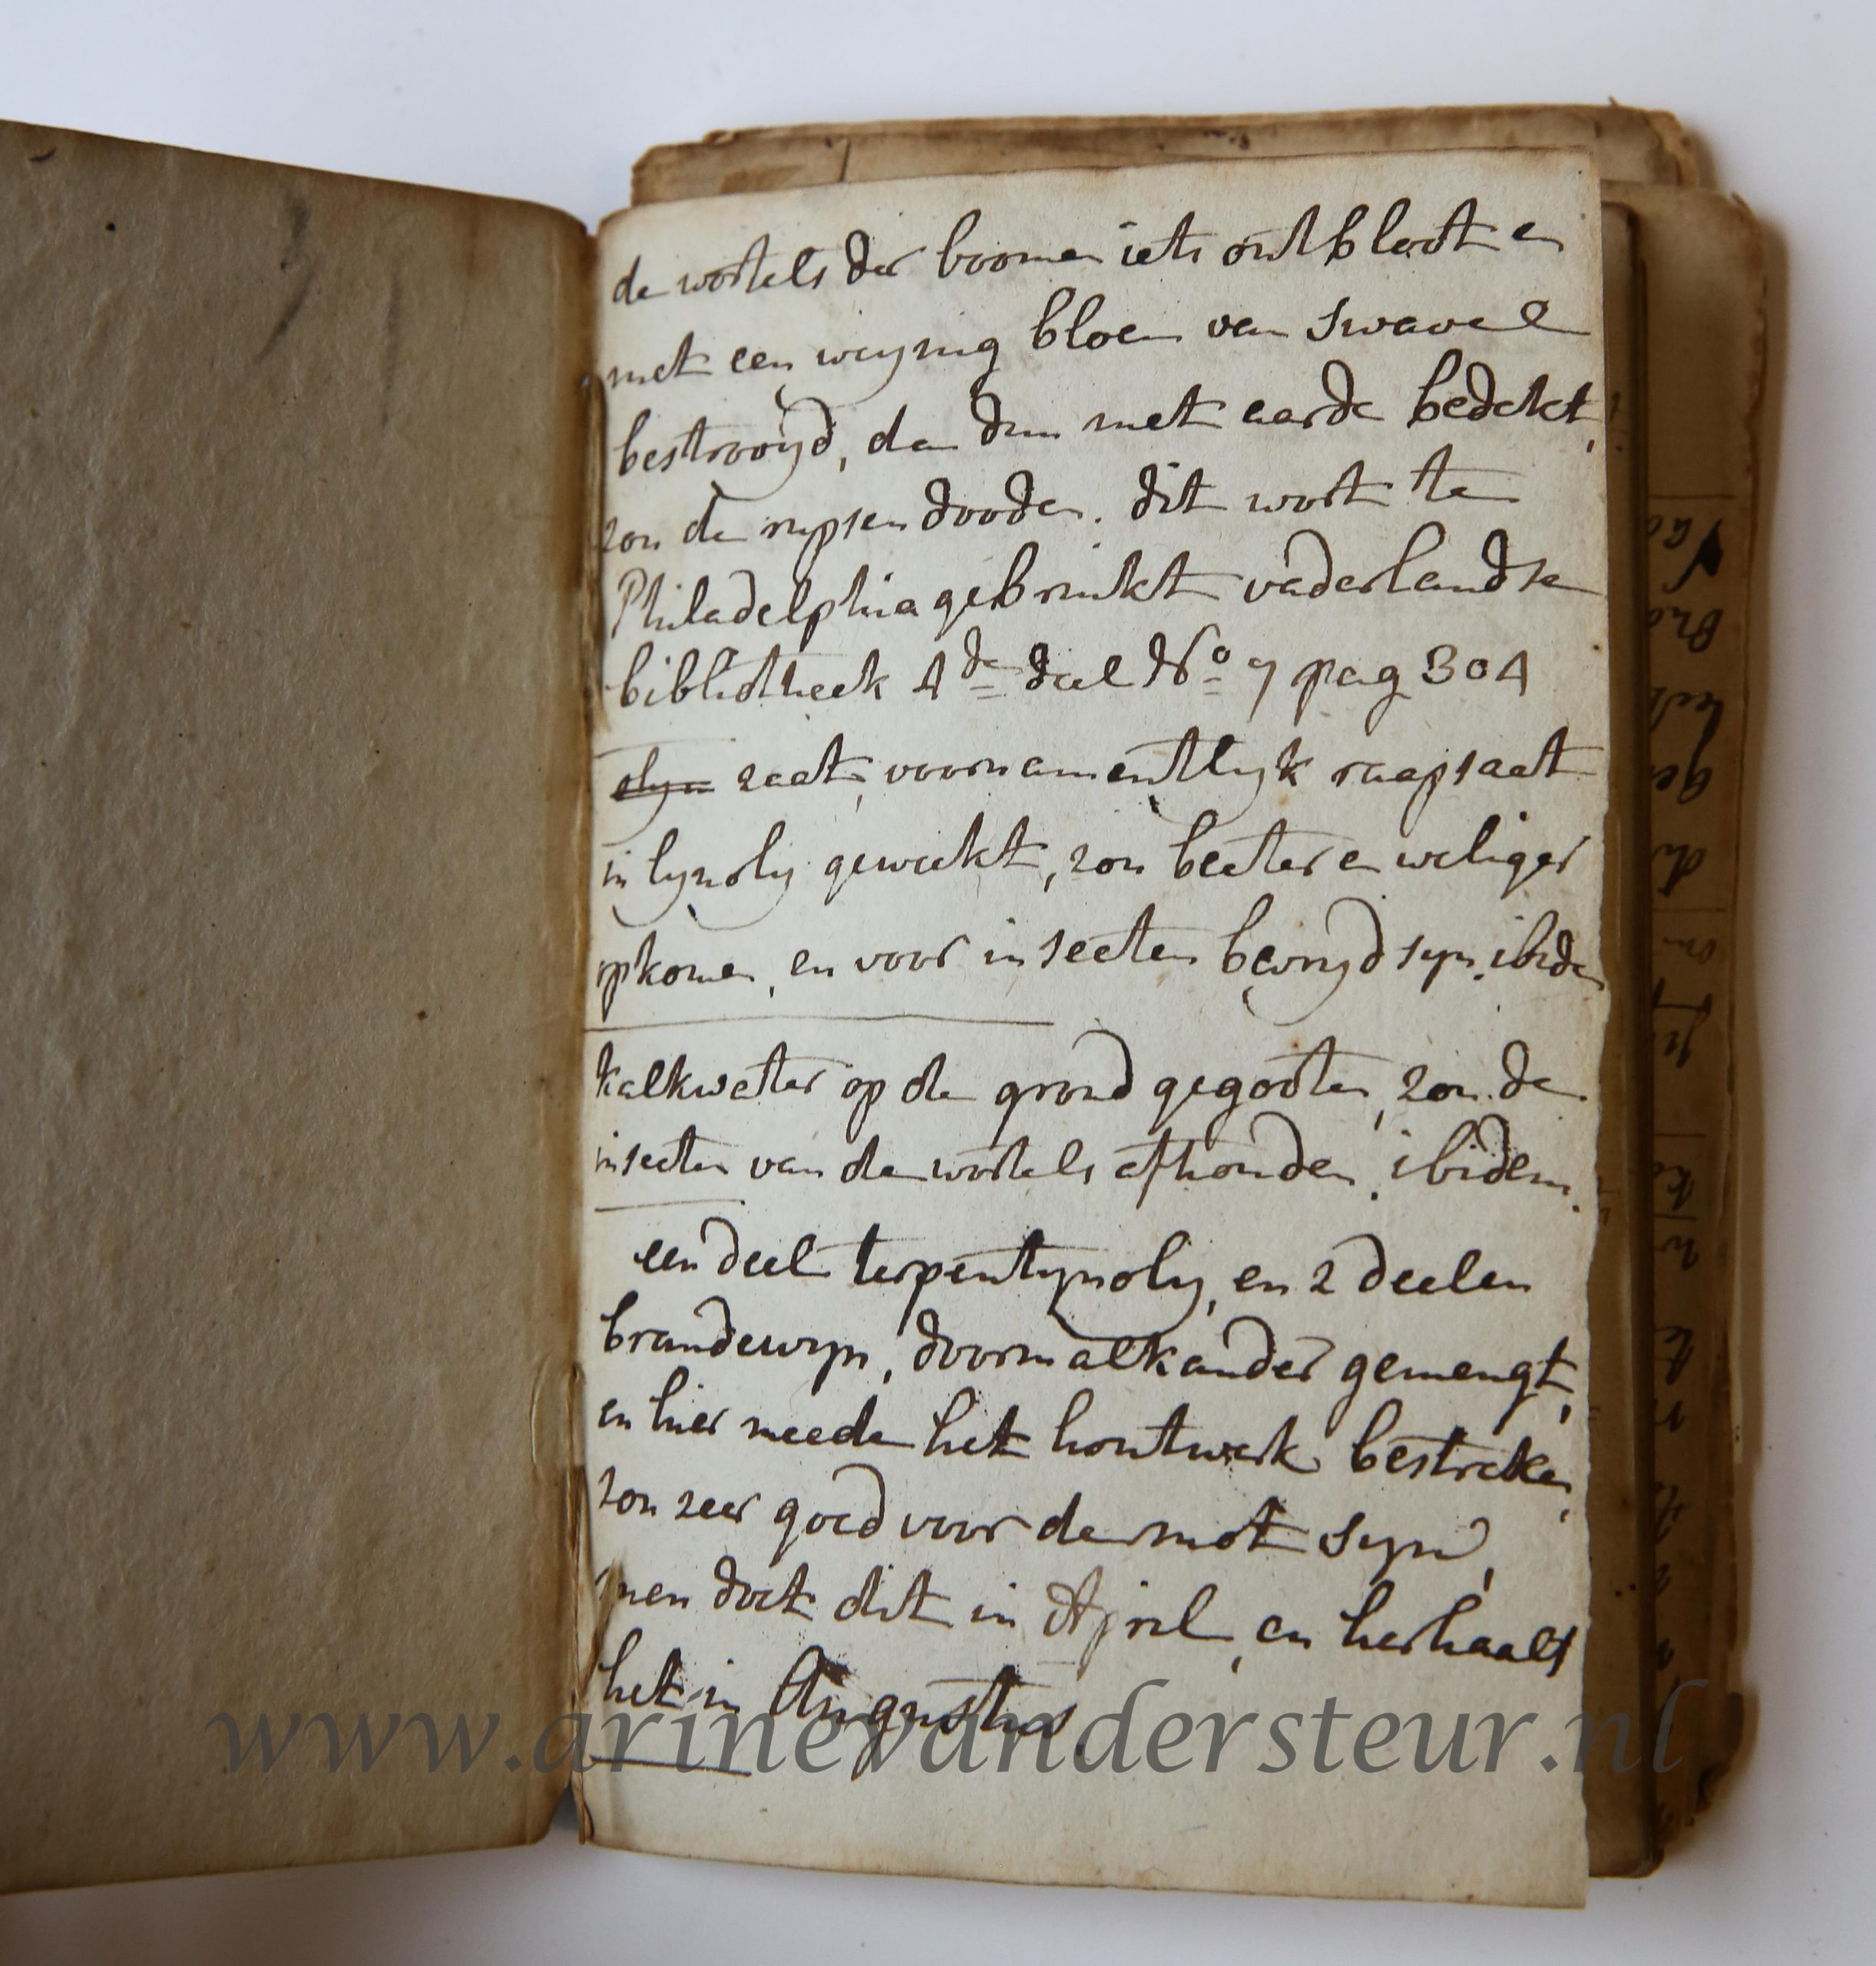  - HOMAN, ZUIDLAREN, ALBERDA -- Aantekeningenboekje van Jan Homan, Schults over Anlo, Gieten en Zuidlaren met recepten voor personen en vee en andere aantekeningen, 18e- eeuw. Gebonden in perkament.